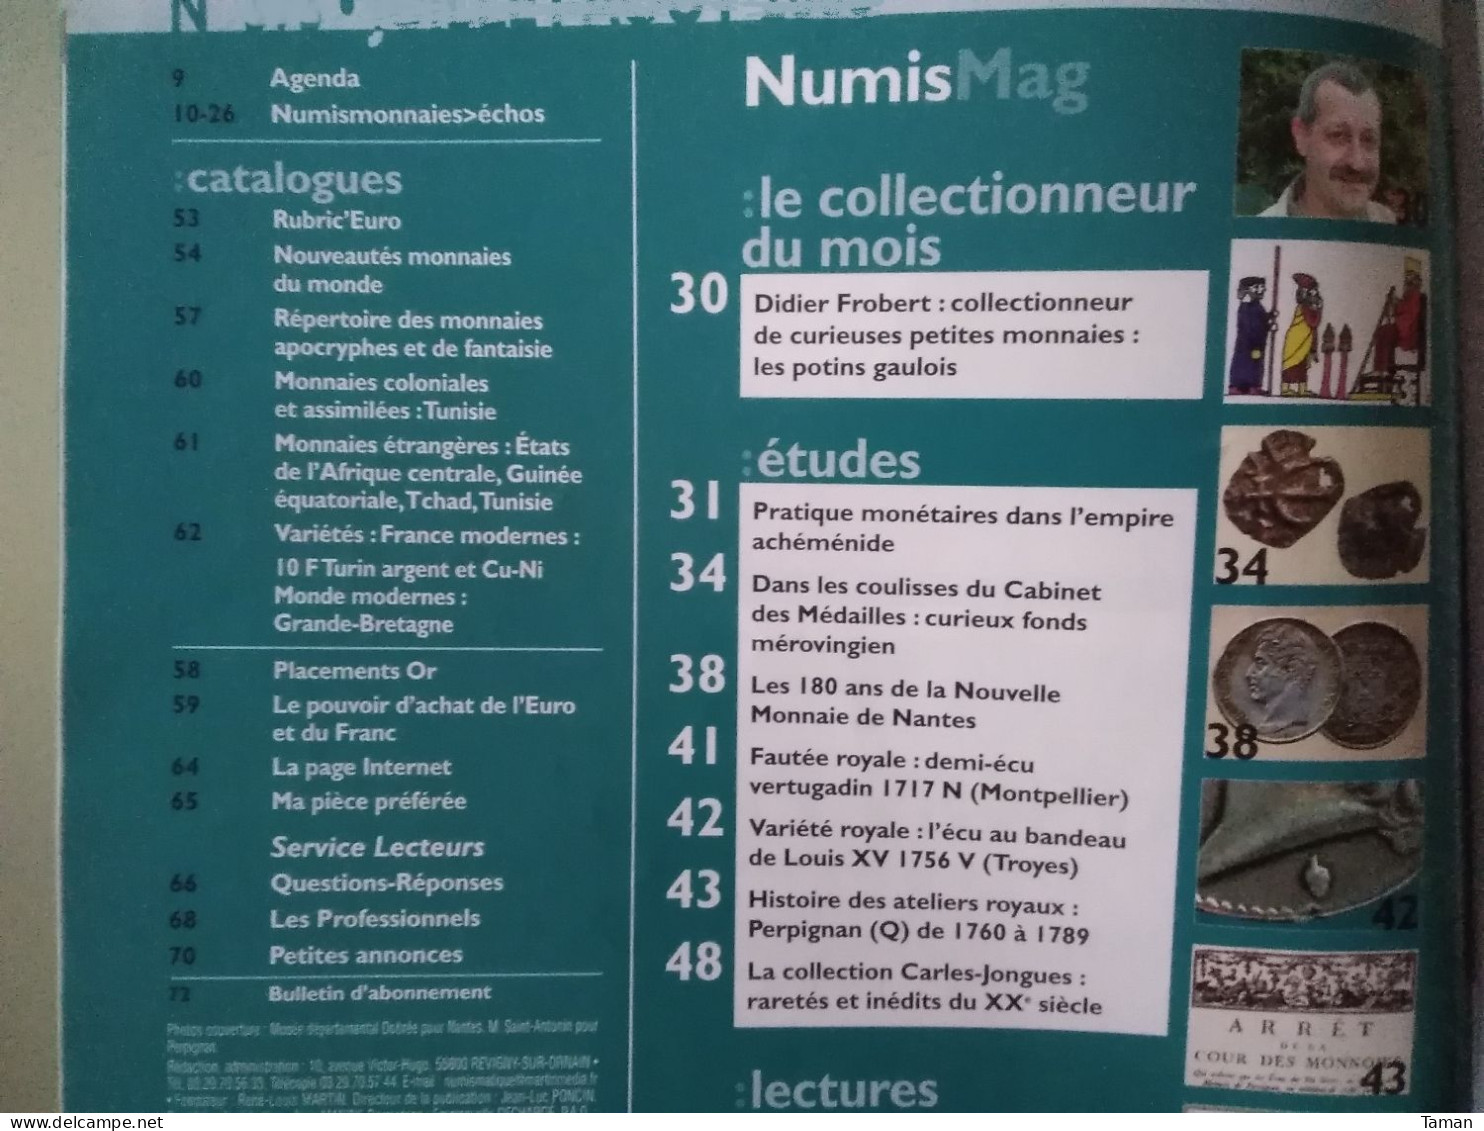 Numismatique & Change - Potins Gaulois - L'empire Achéménide - Mérovingien - Nantes - Perpignan Atelier Q - Francés